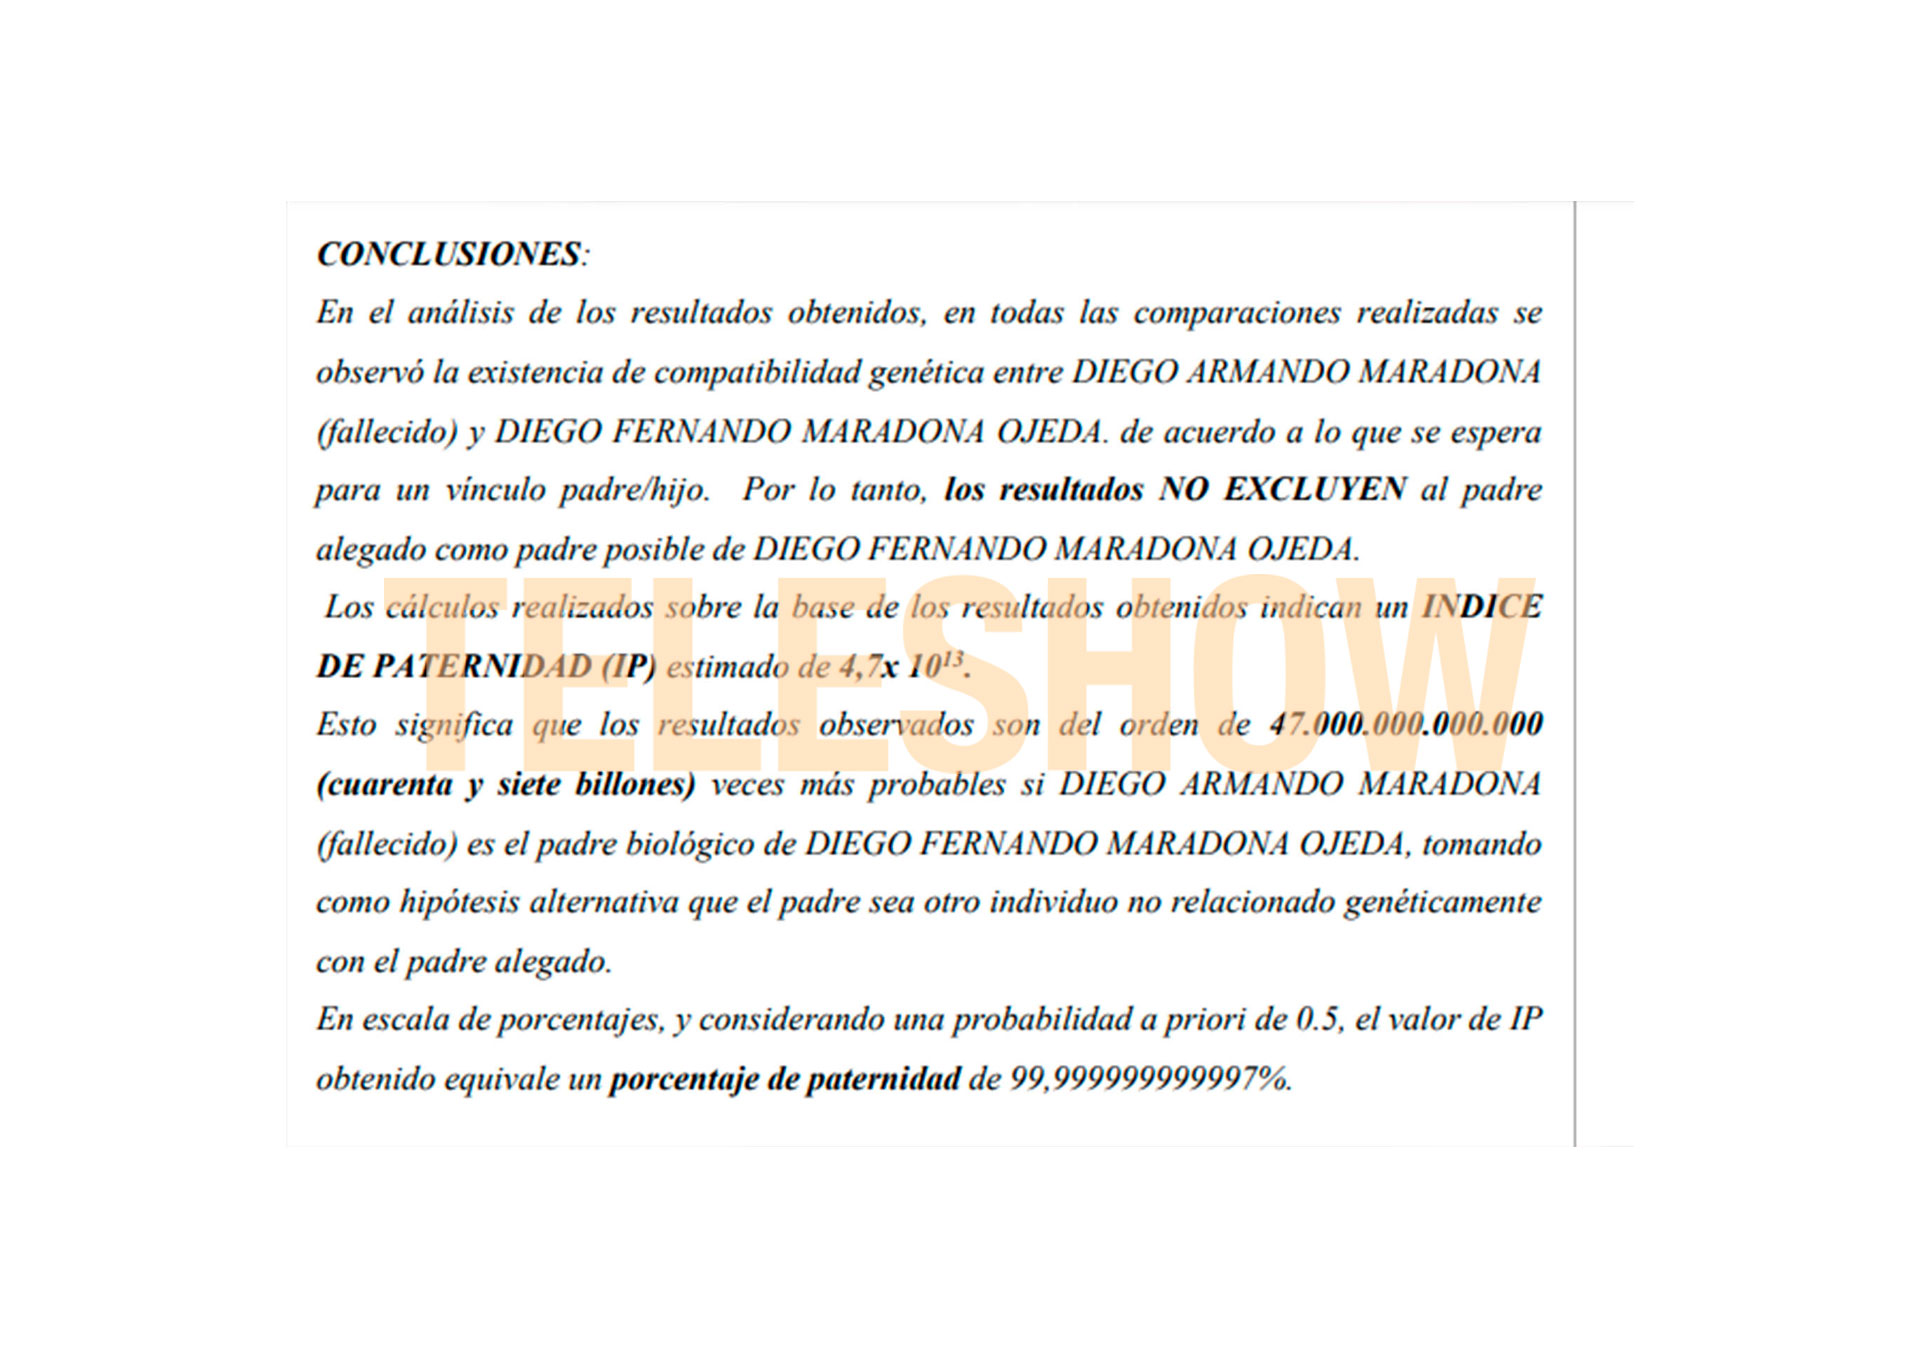 "Porcentaje de paternidad de 99,999999999997%”, dice el documento, sobre la filiación entre Diego Maradona y Dieguito Fernando